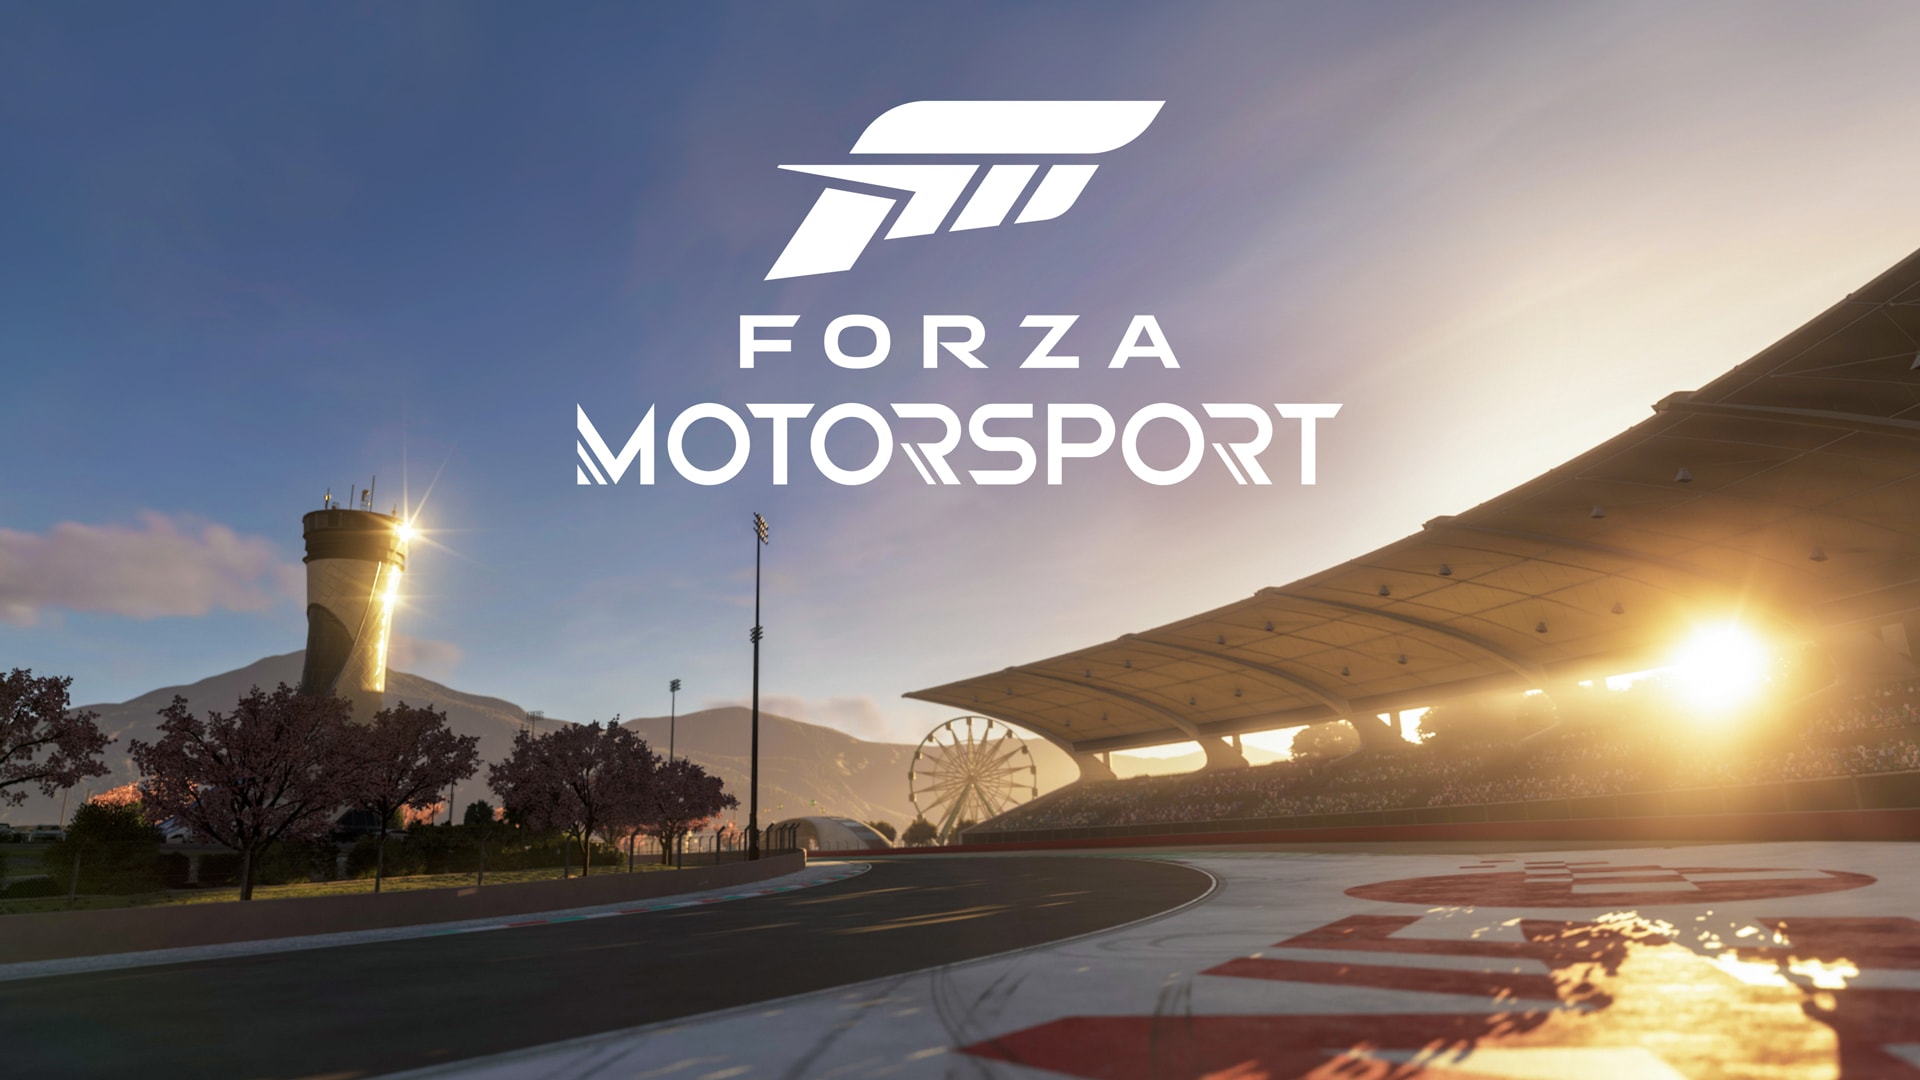 Forza Horizon 6 - Trailer XBOX 